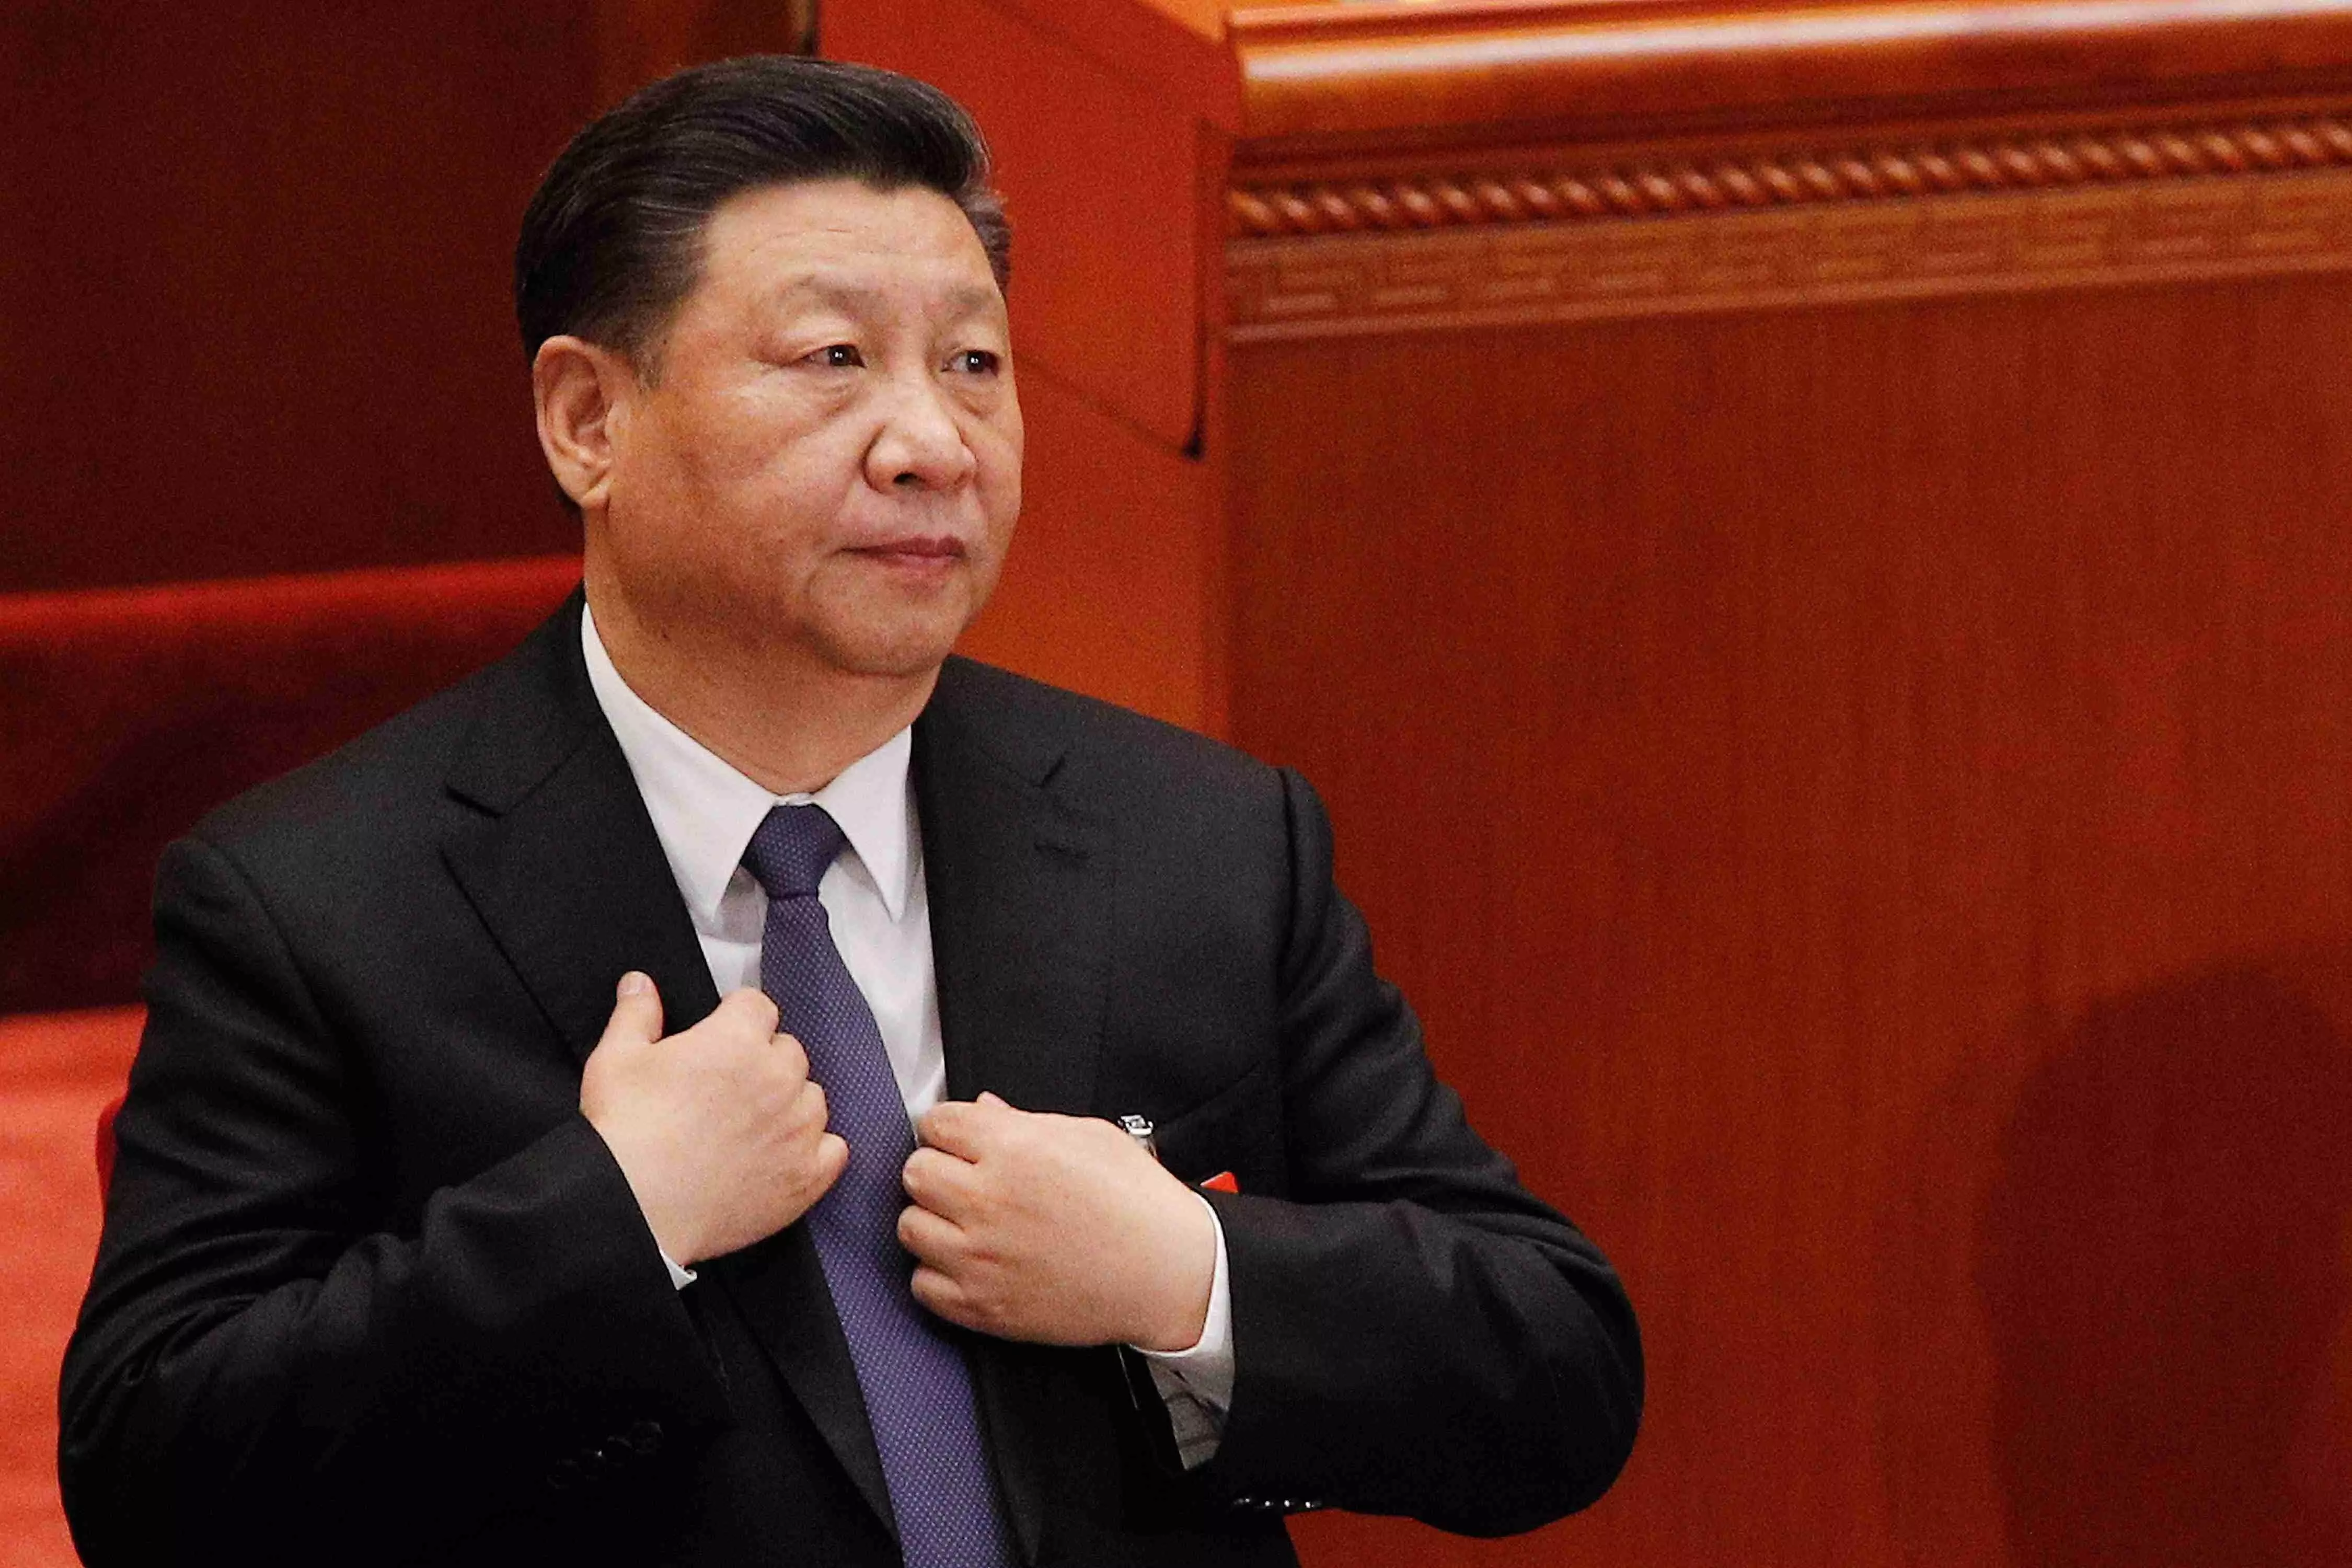 क्या चीनी राष्ट्रपति शी जिनपिंग हो गए हाउस अरेस्ट ? सोशल मीडिया पर चर्चाएं तेज